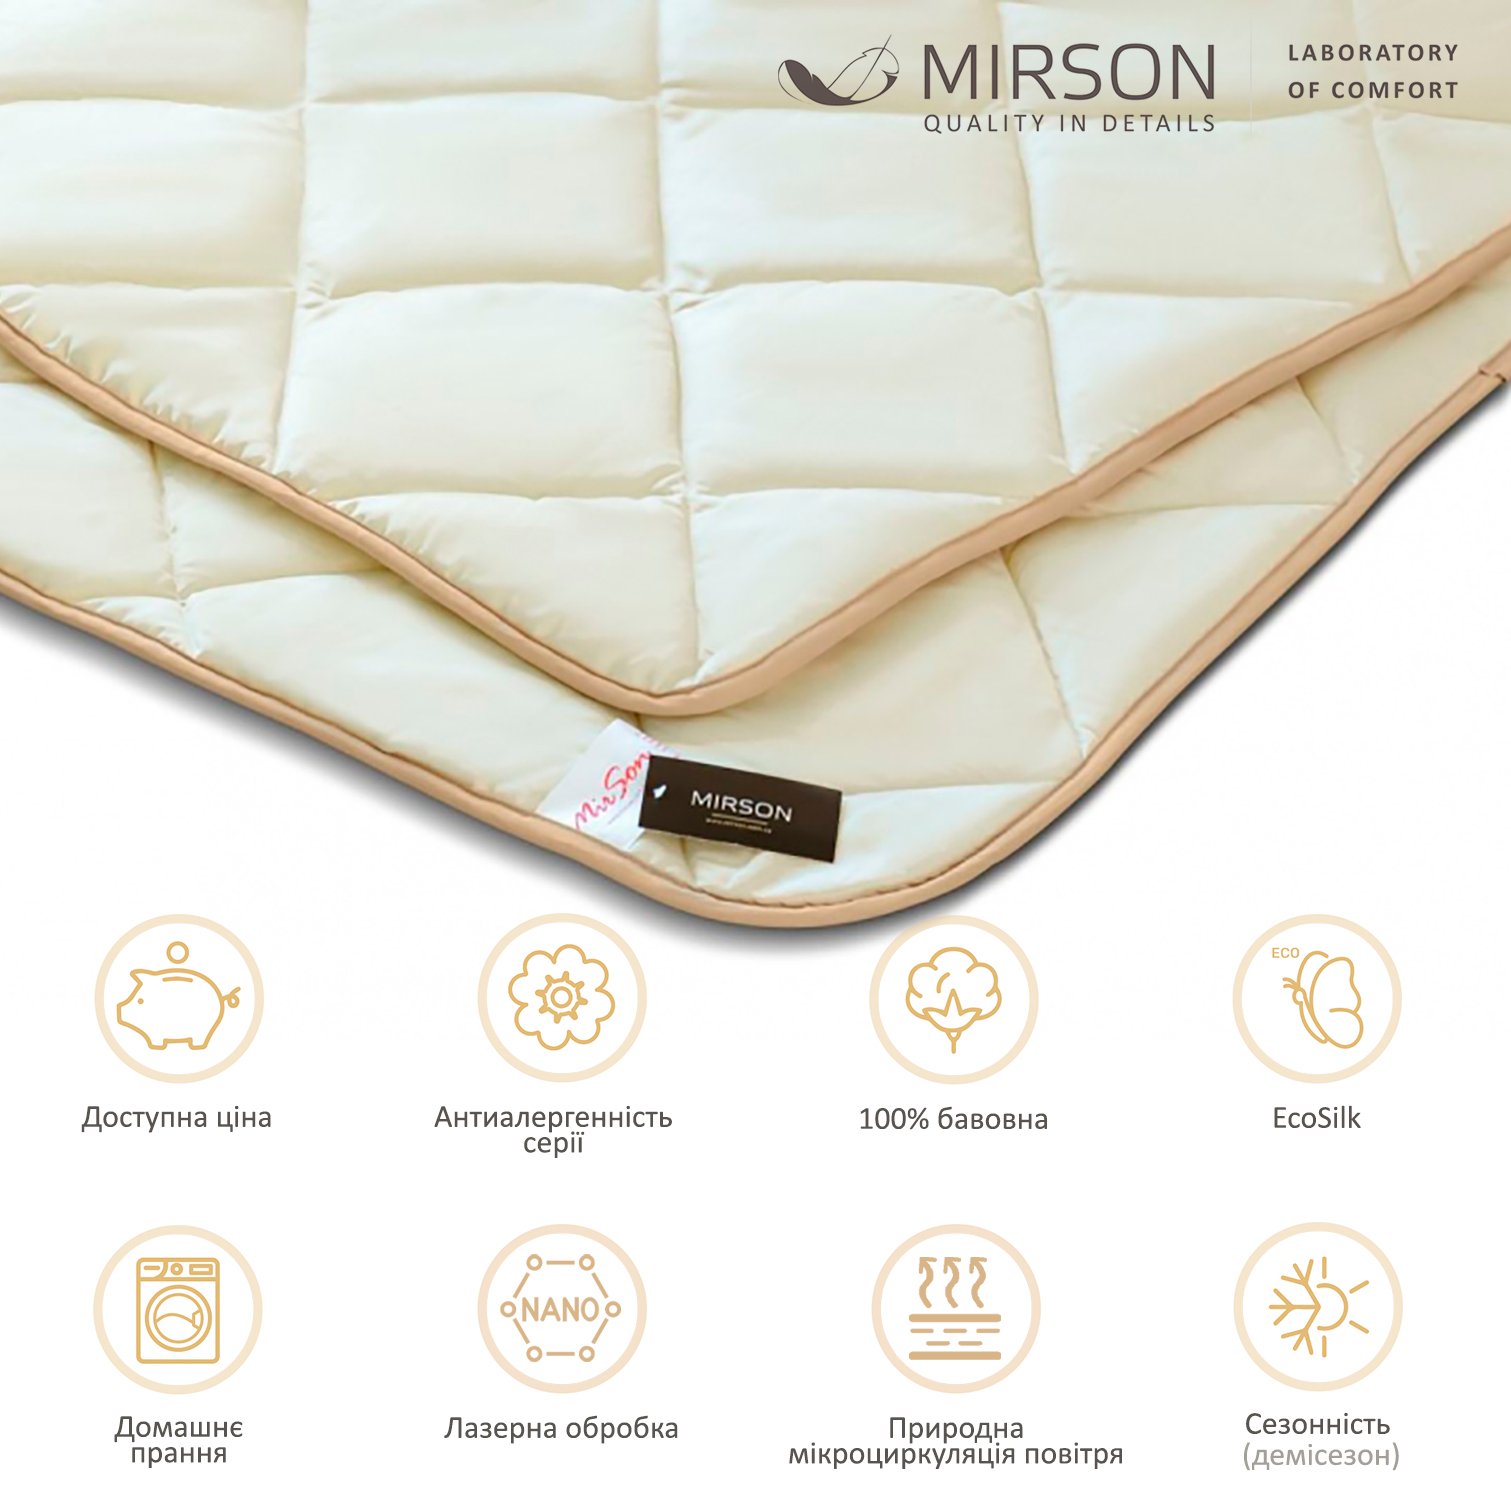 Одеяло антиаллергенное MirSon Carmela EcoSilk №011, демисезонное, 110x140 см, бежевое (8063009) - фото 5